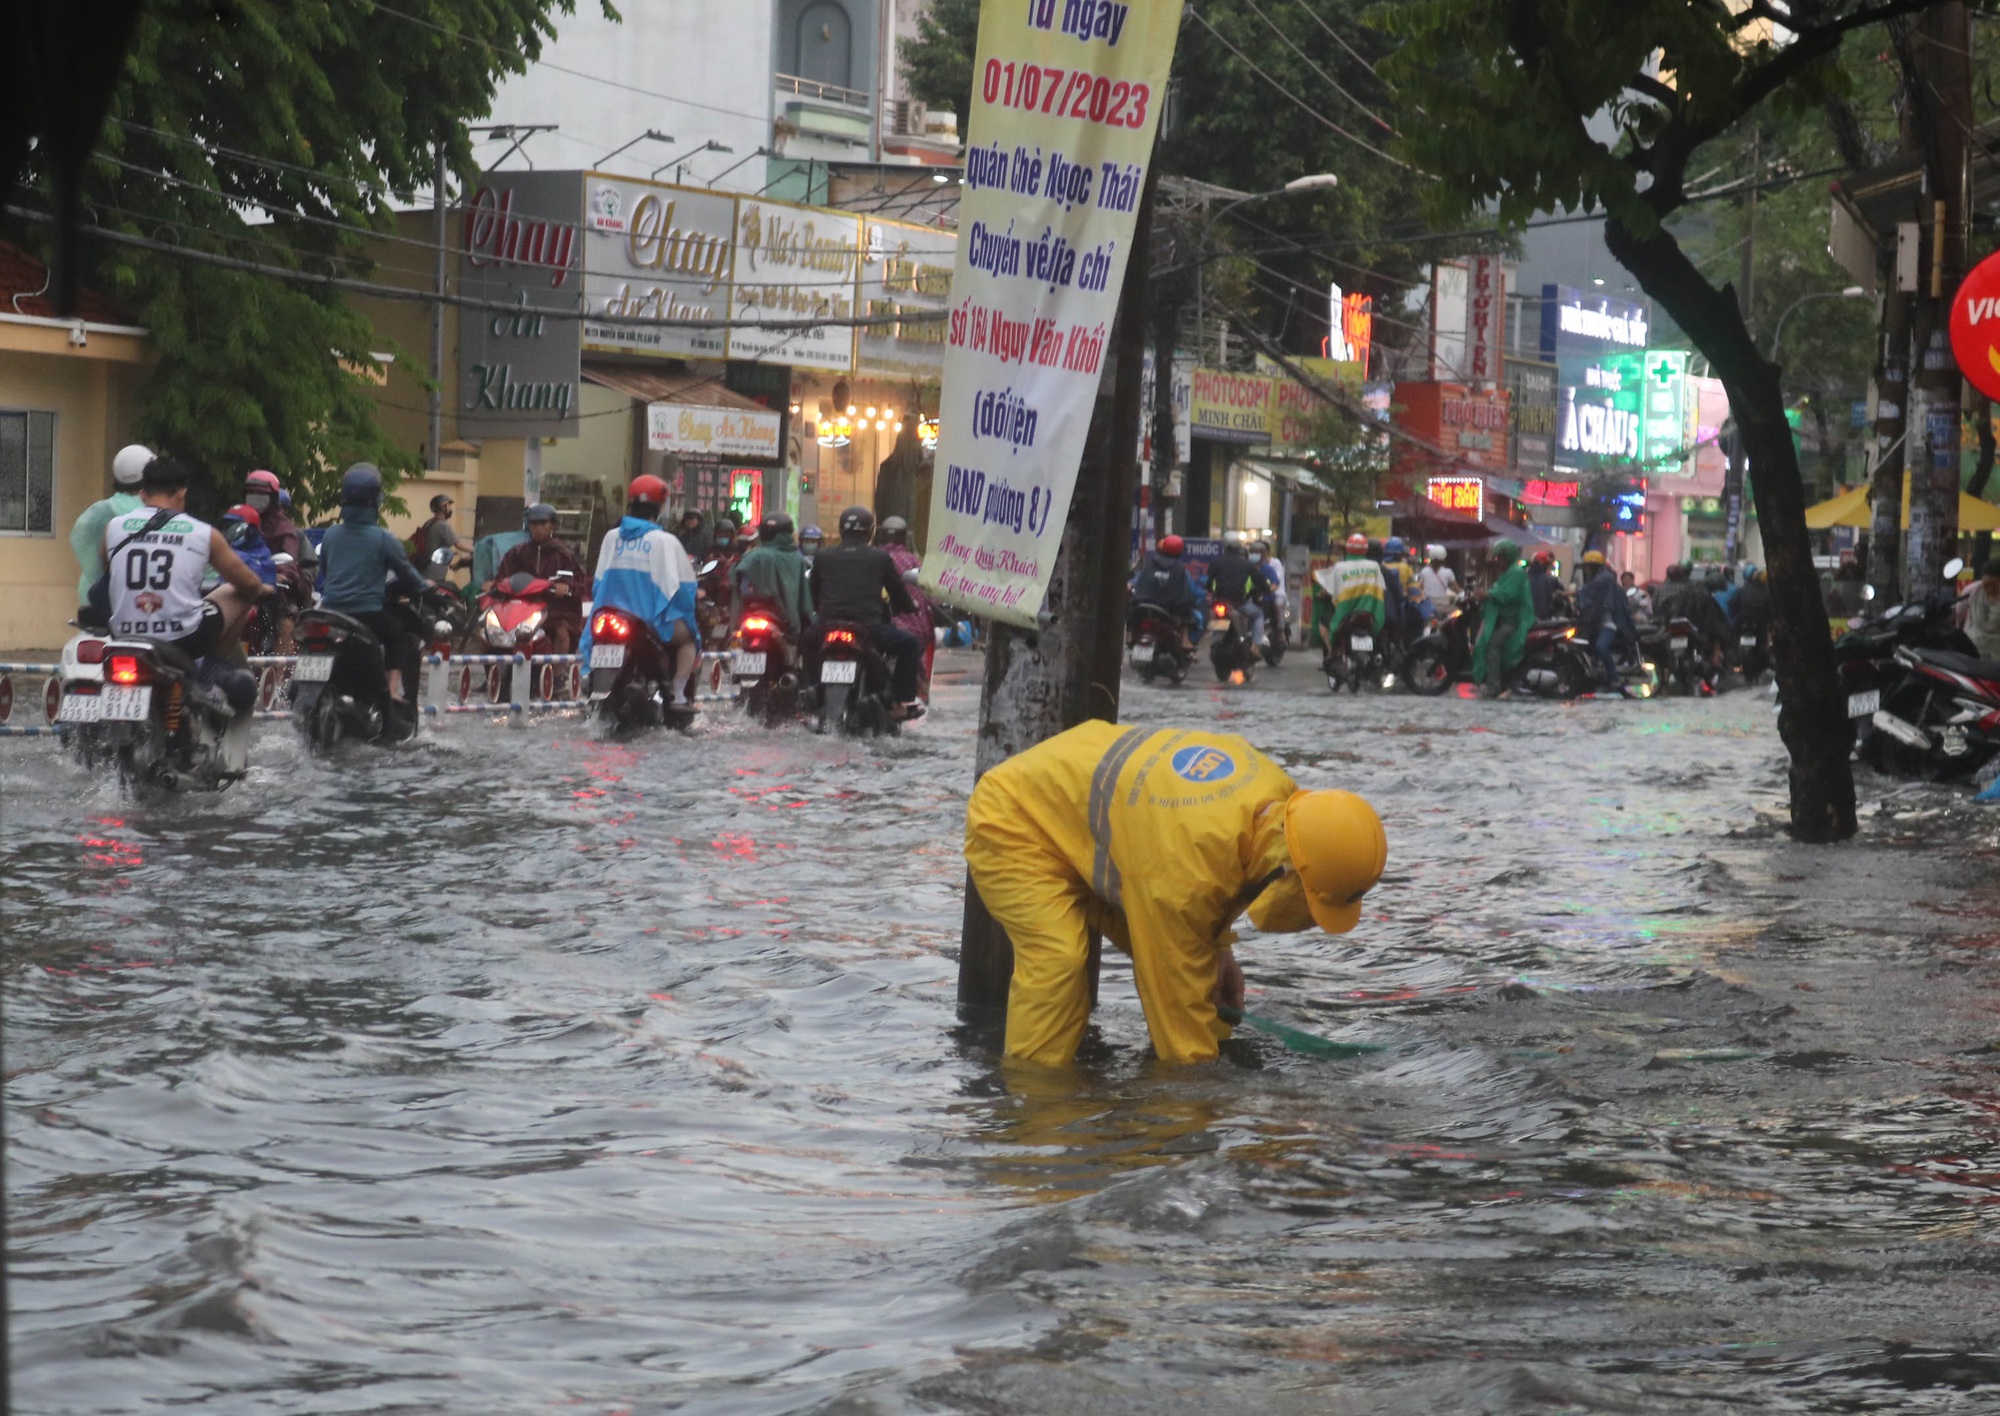 CLIP: TP HCM mưa tối trời, người dân xé nước trên đường - Ảnh 9.